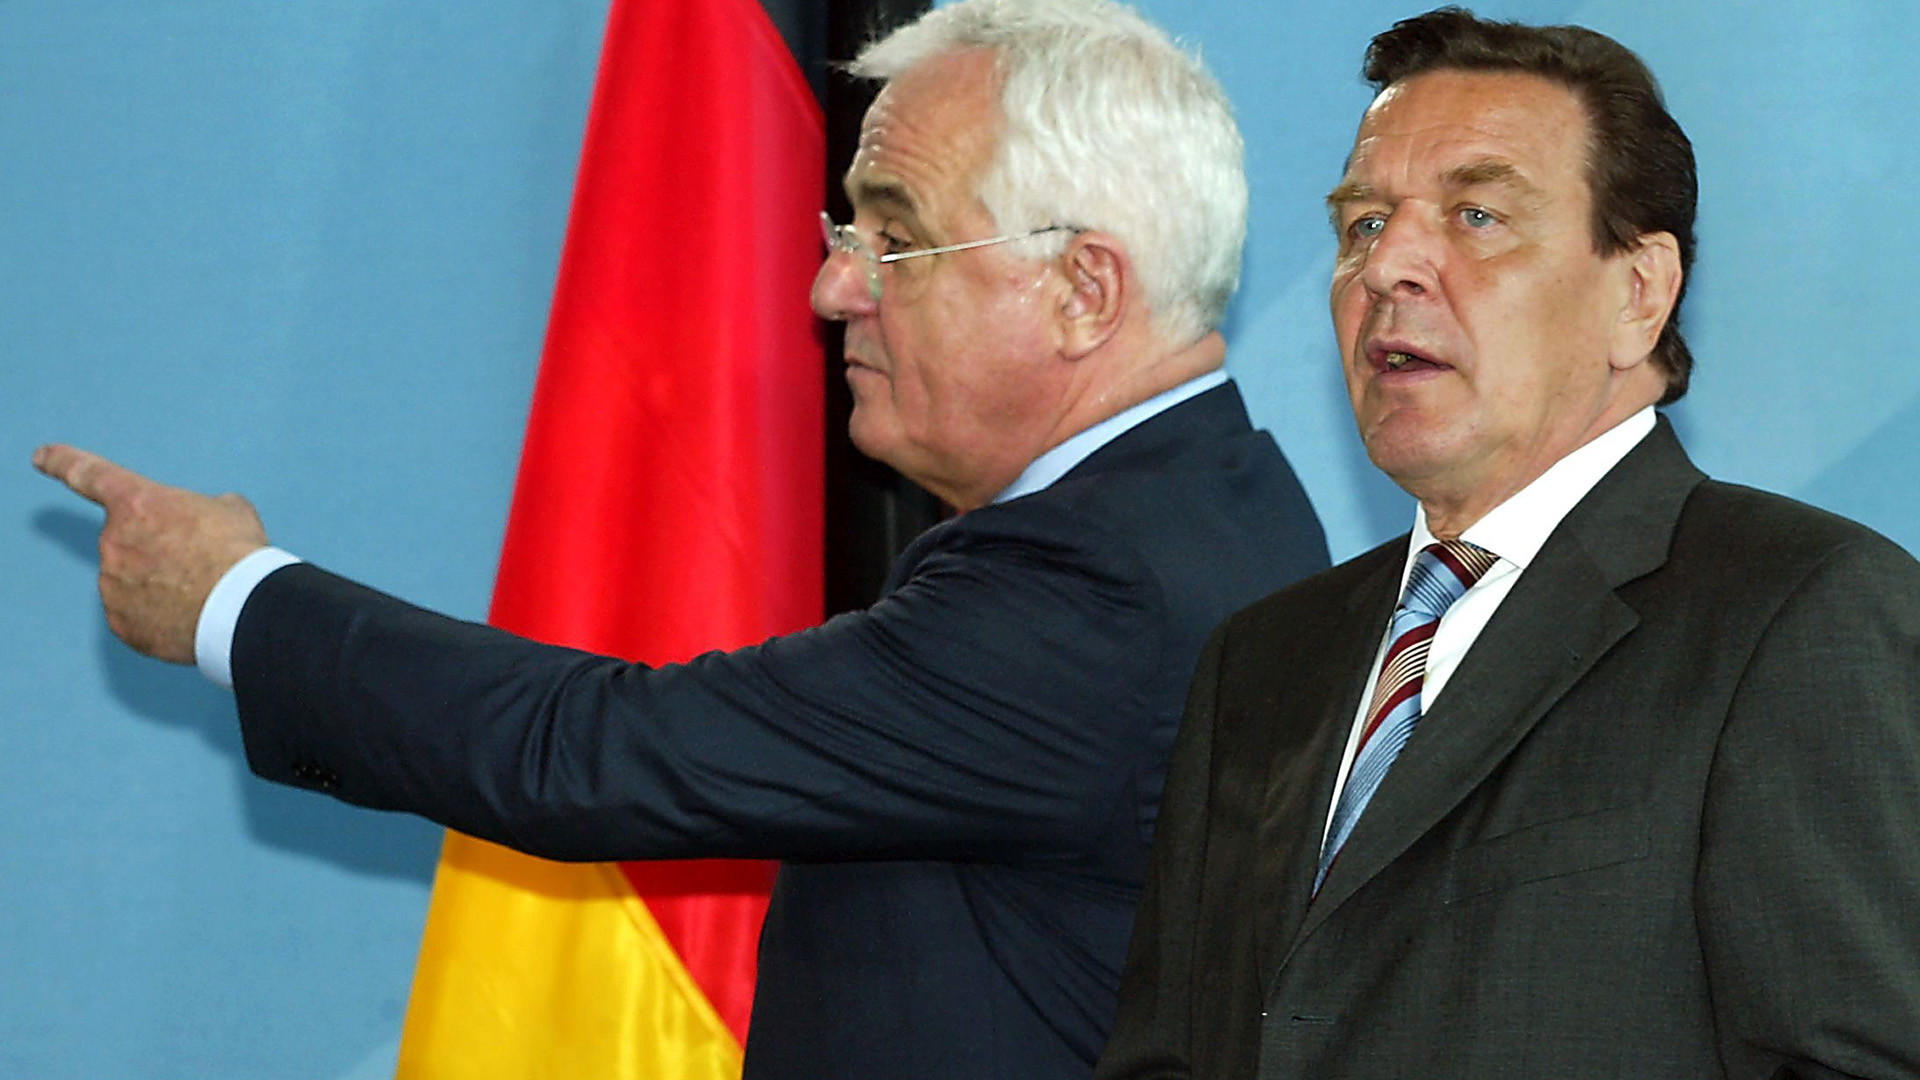 Peter Hartz überreichte den Bericht der Kommission am 16. August 2002 an Gerhard Schröder.